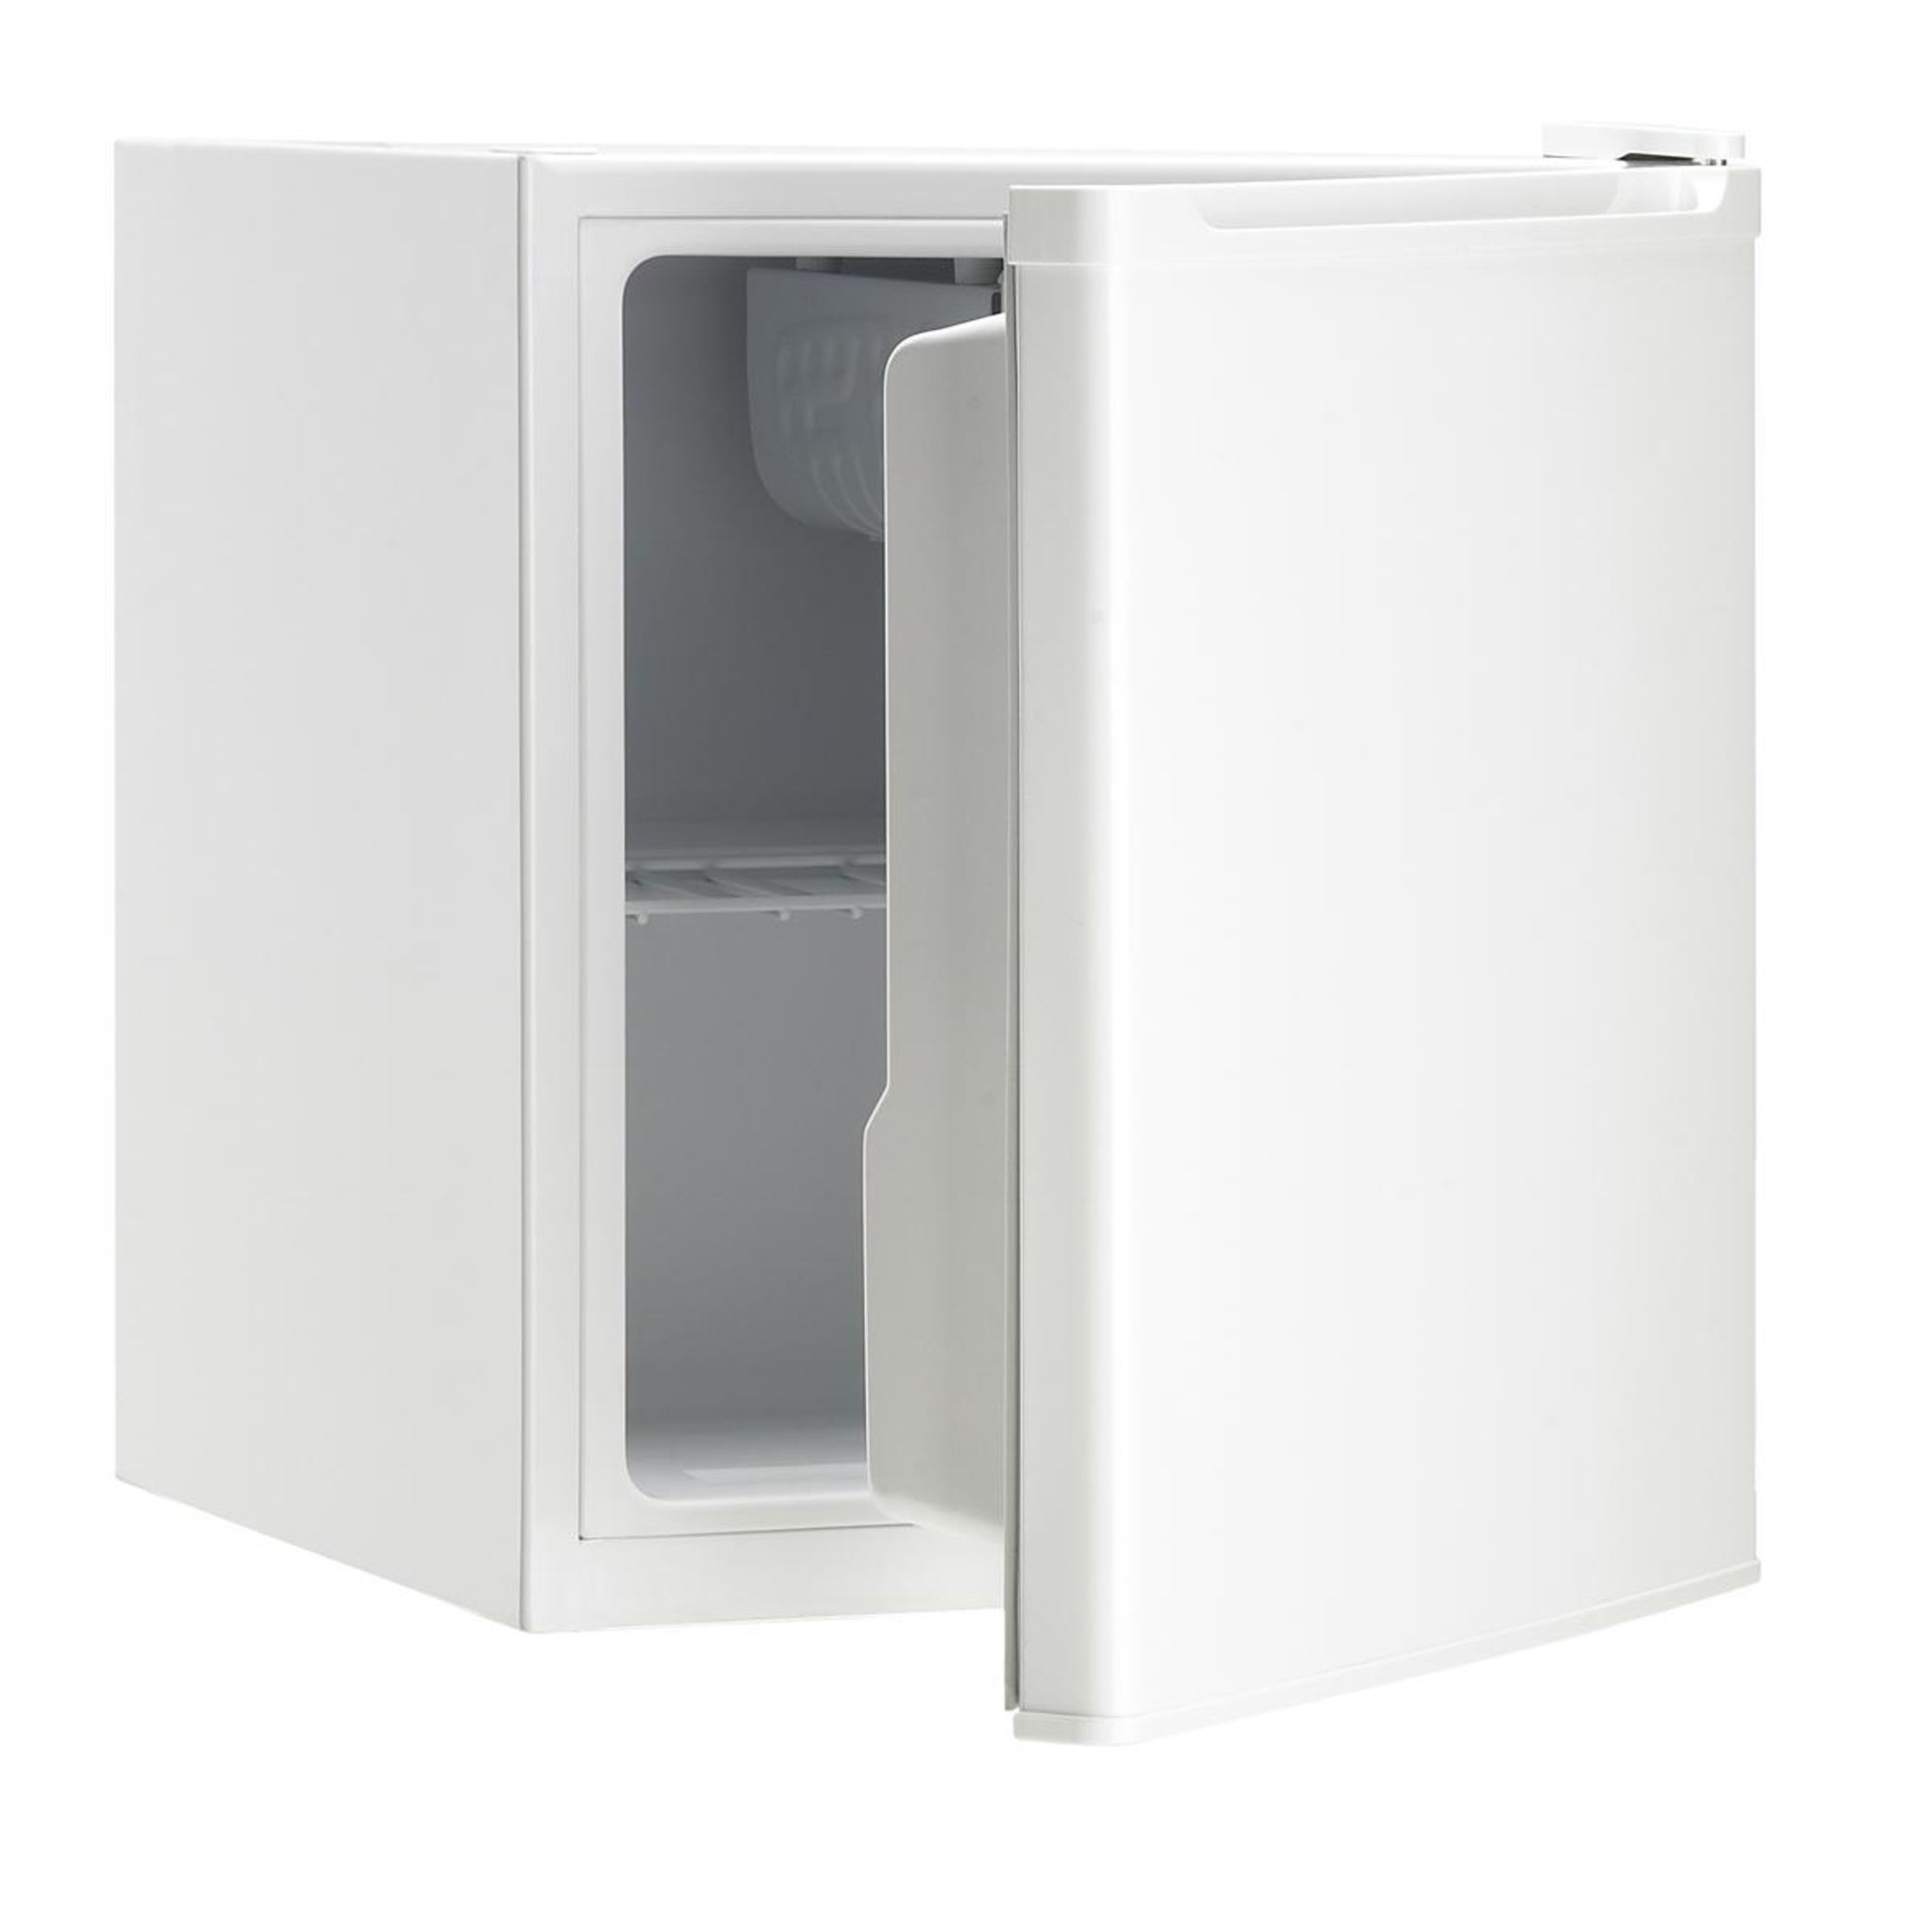 SELECLINE Réfrigérateur bar DF1-06-1/180072, 46 L, Froid Statique